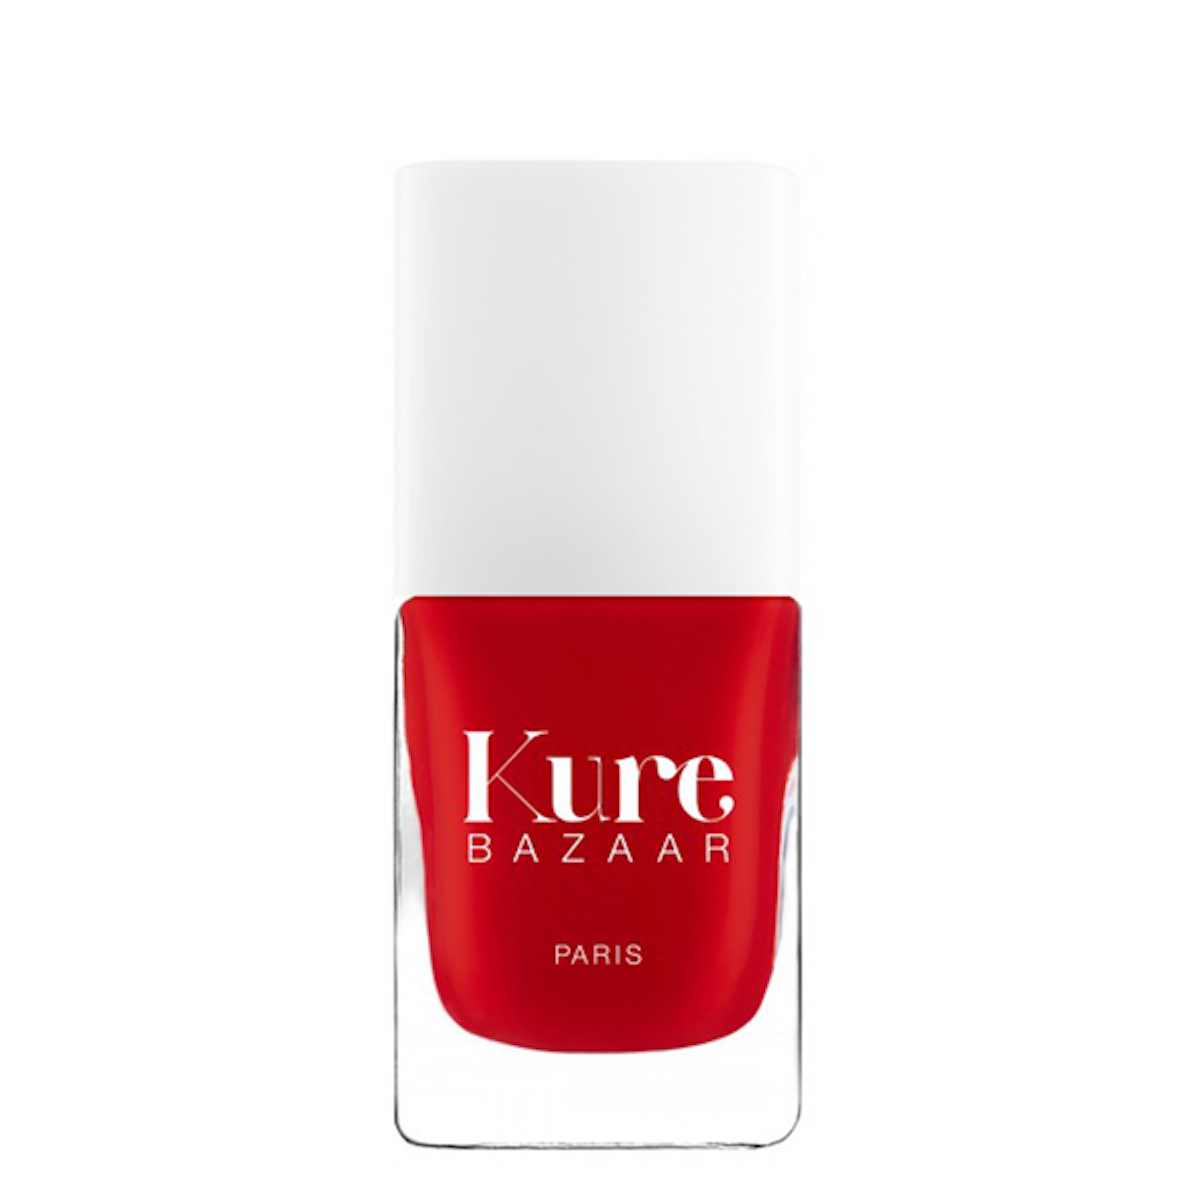 Non-toxic red nail polish Kure Bazaar